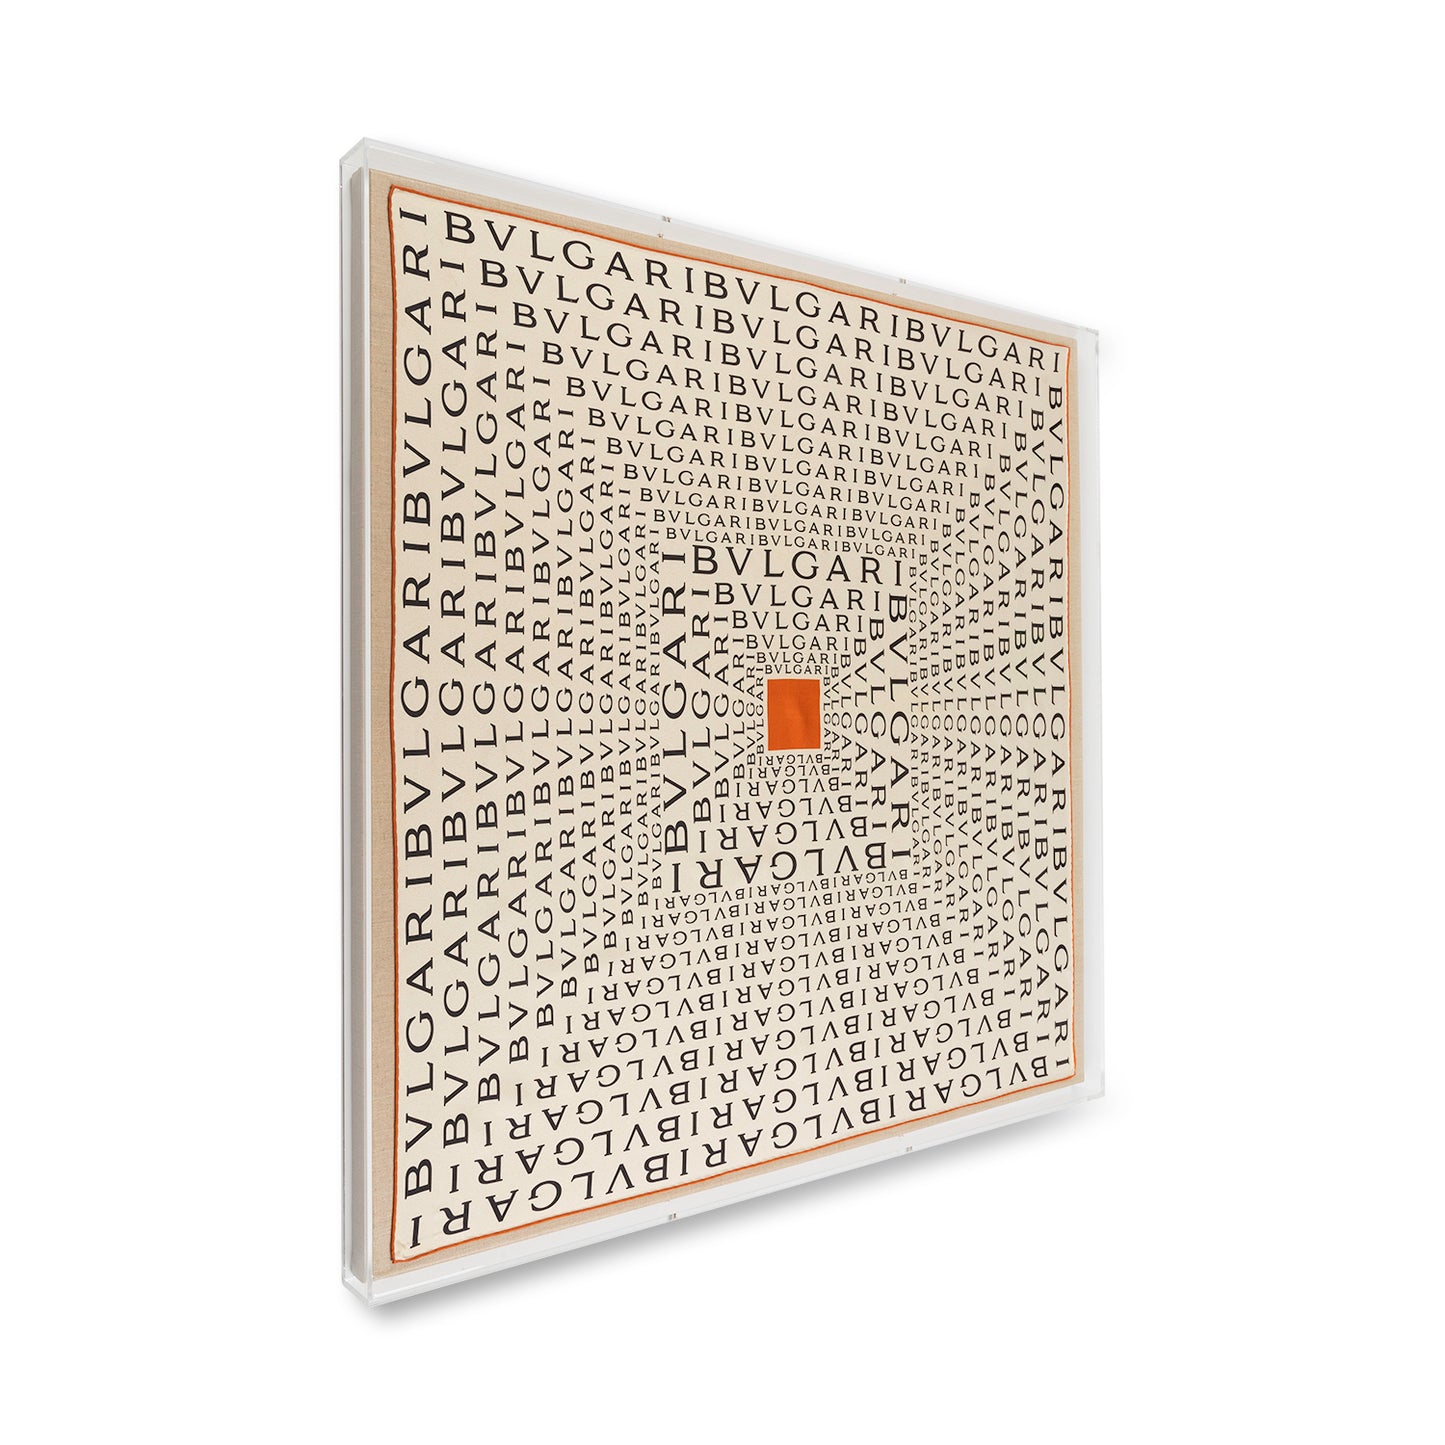 Framed Bulgari Scarf with Orange Silk Scarf in a 36x36x2" Shadowbox